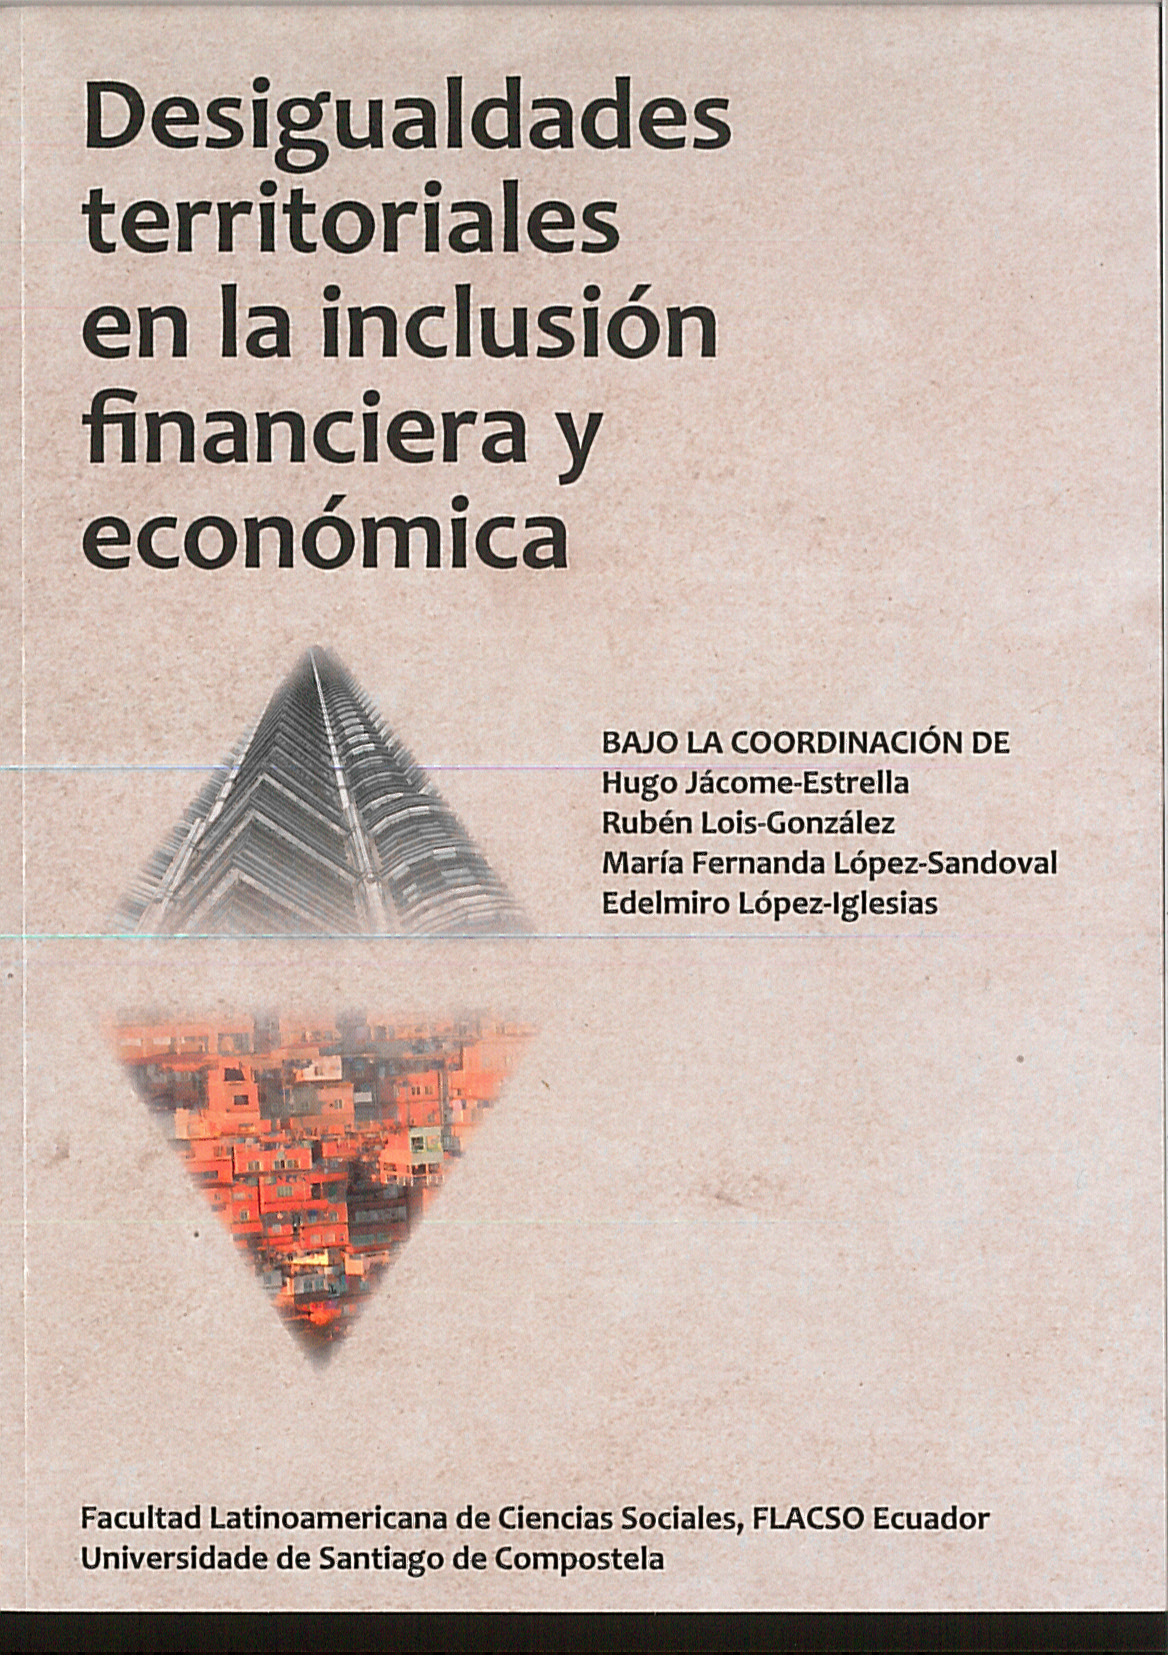 Imagen de portada del libro Desigualdades territoriales en la inclusión financiera y económica